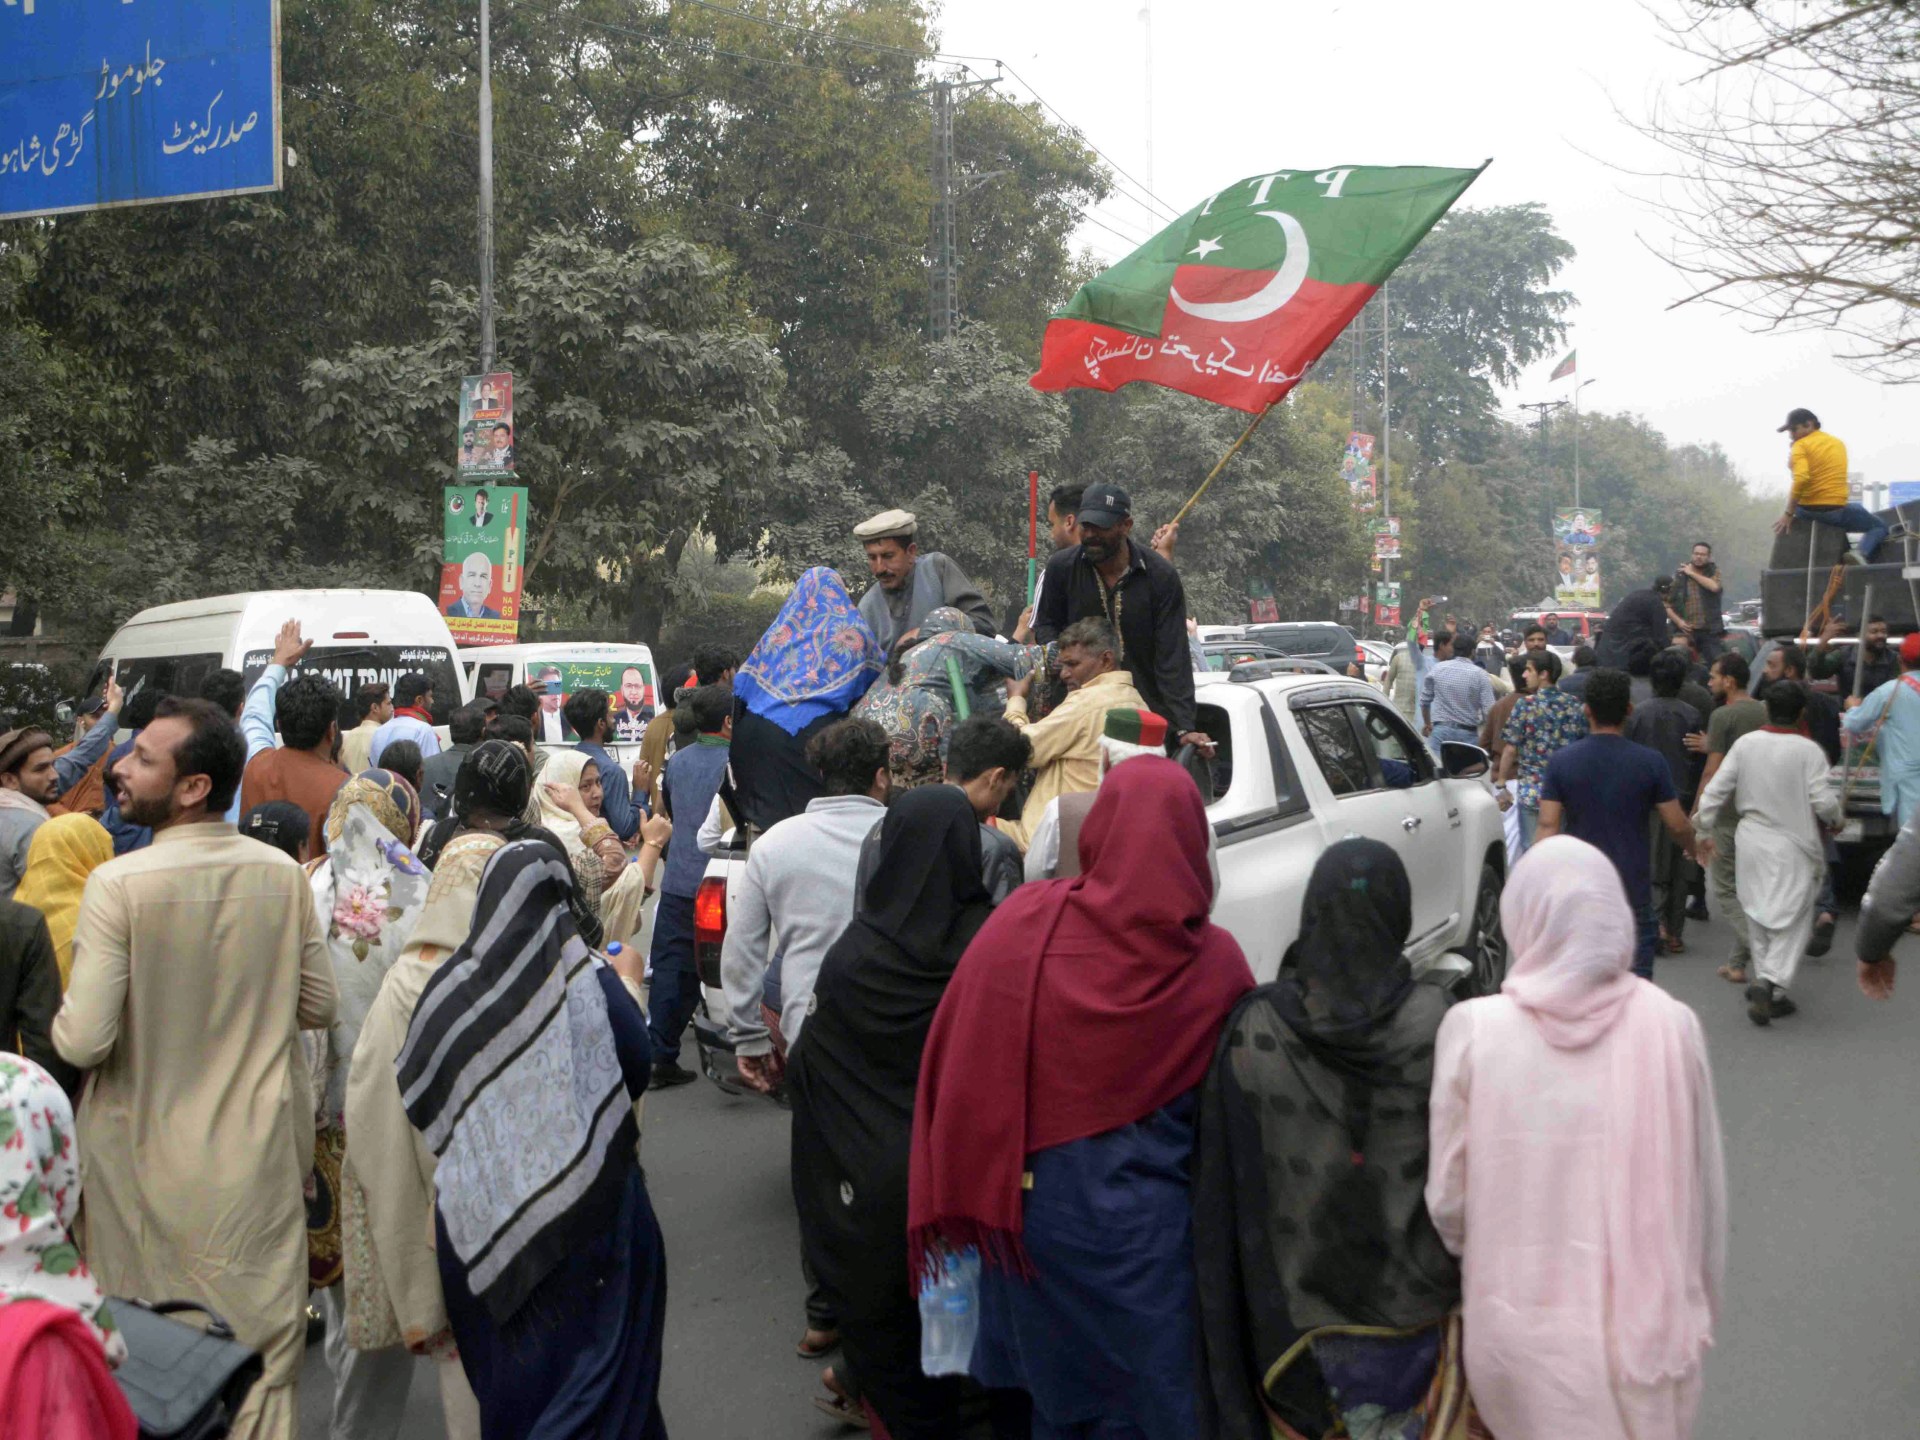 Partai Imran Khan melancarkan protes ‘isi penjara’ di Pakistan |  Berita Imran Khan